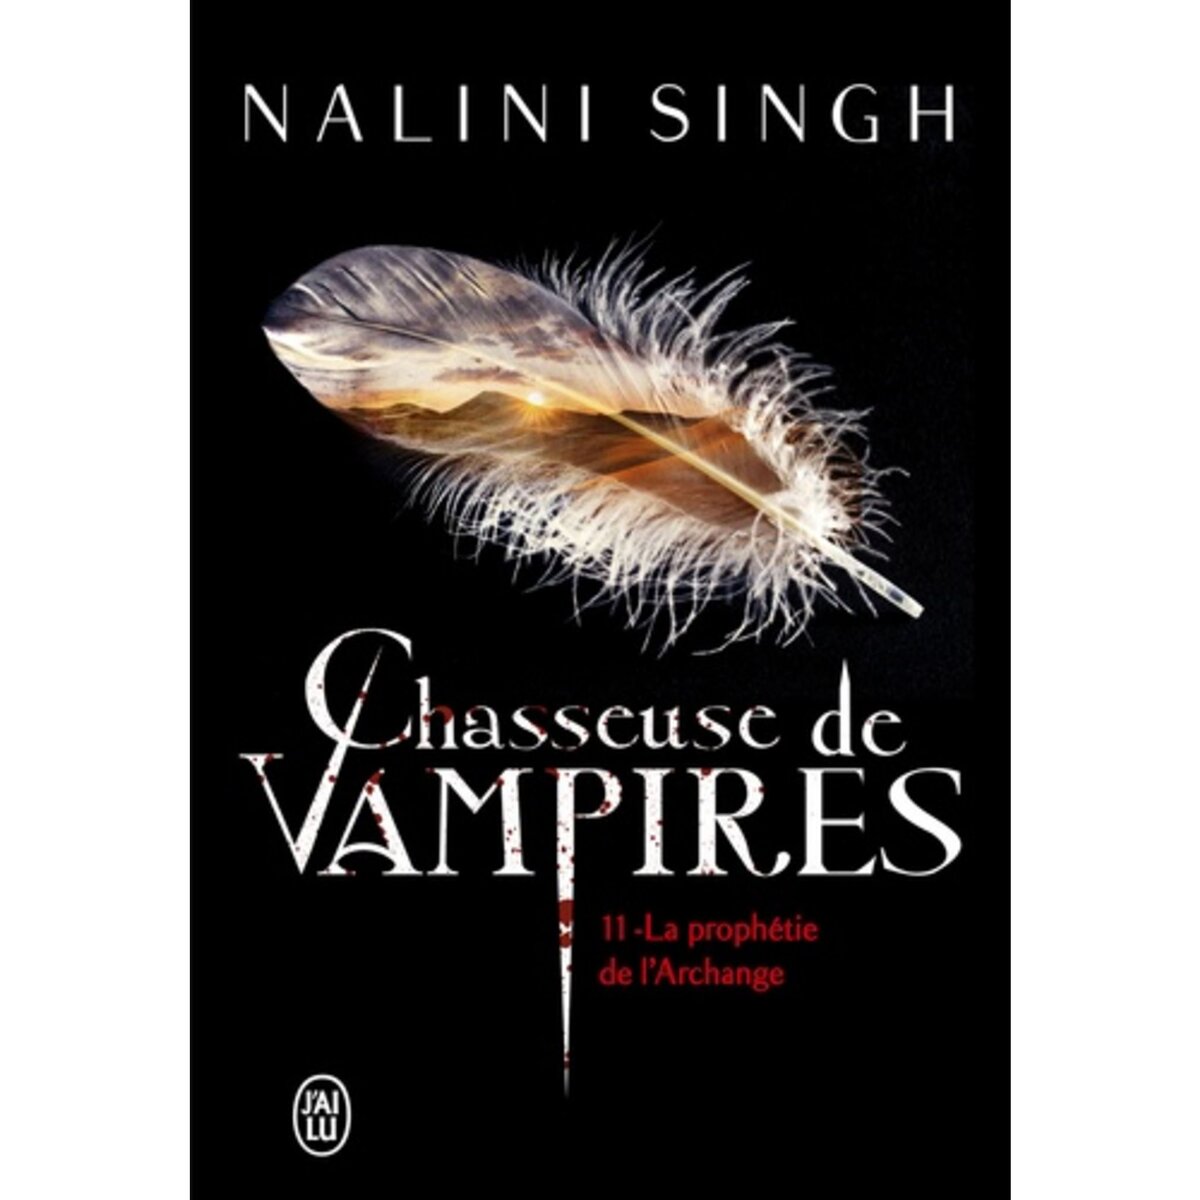  CHASSEUSE DE VAMPIRES TOME 11 : LA PROPHETIE DE L'ARCHANGE, Singh Nalini